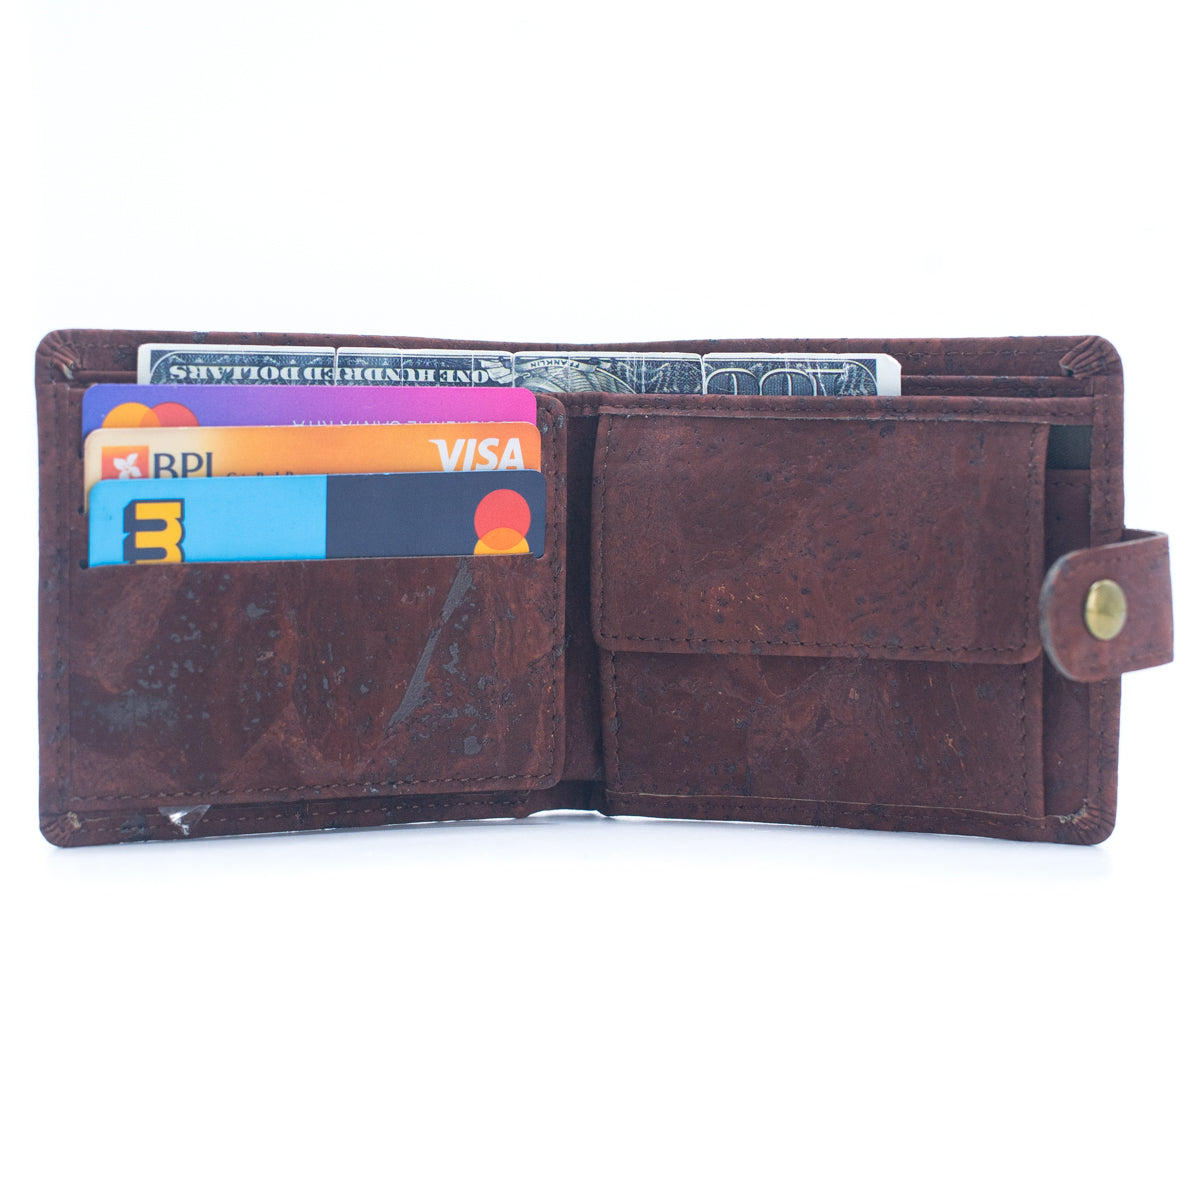 Sleek Bi-fold Cork Vegan Wallet w/ Snap Button | THE CORK COLLECTION